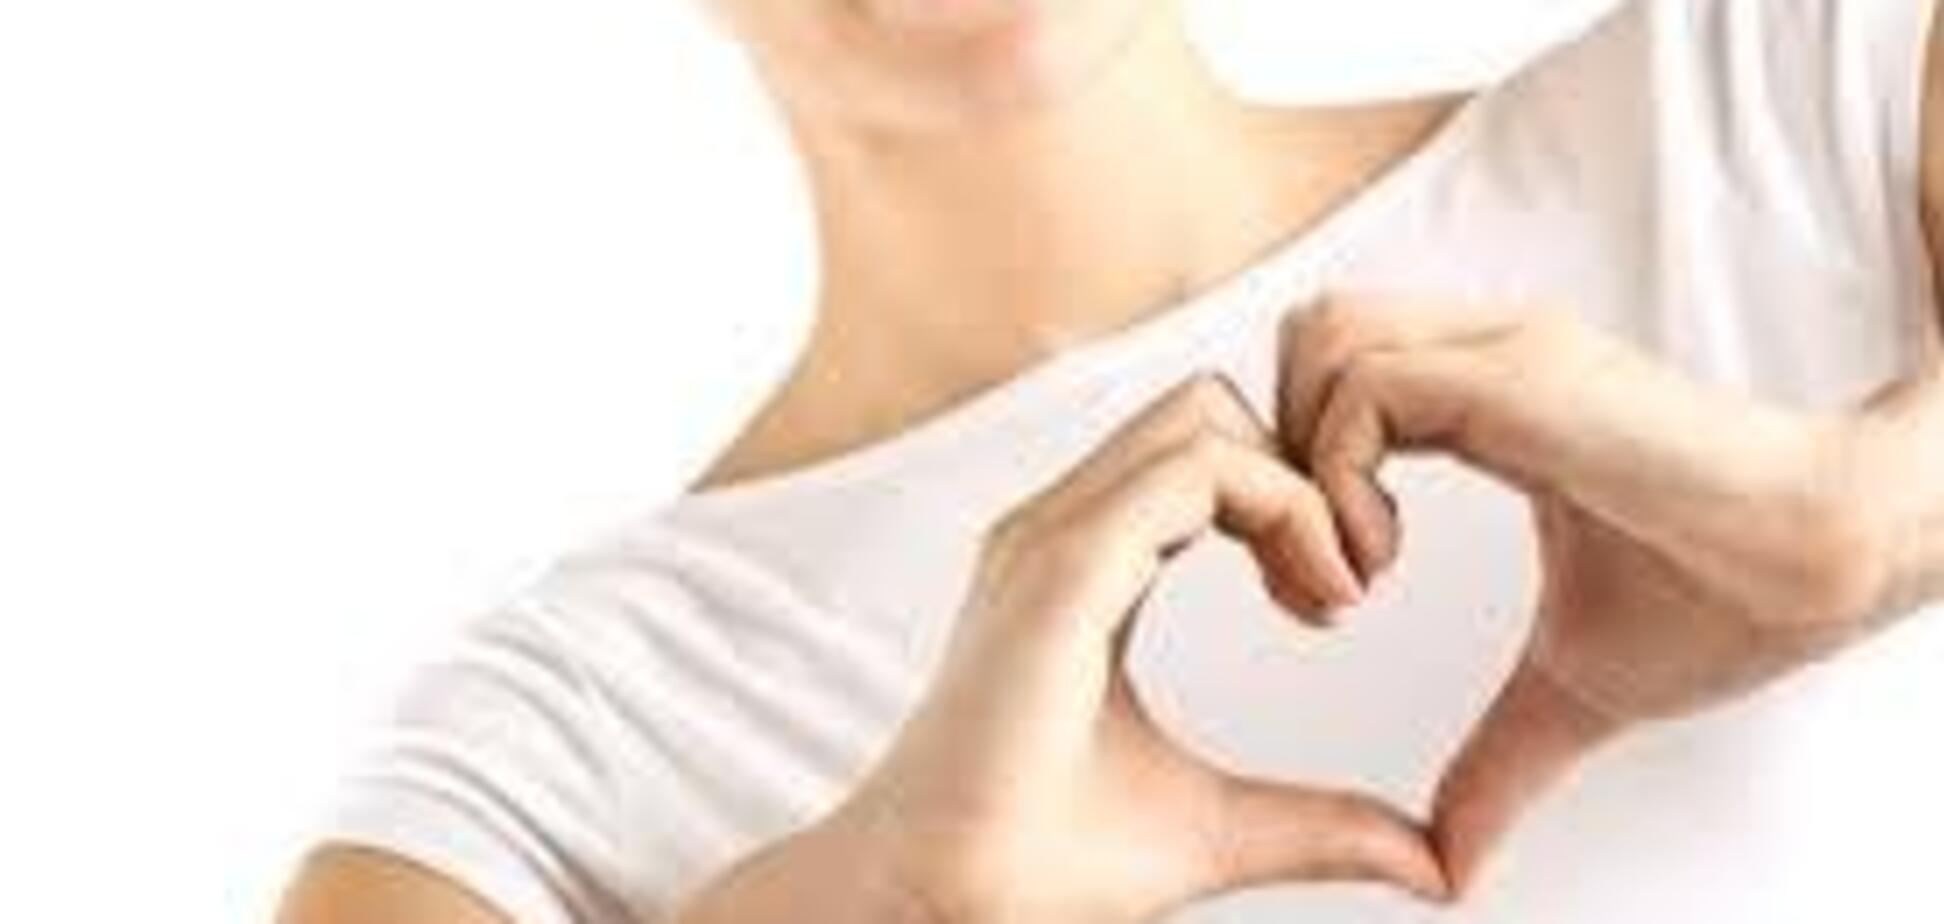 Польза L-аргинина для сердца при активных физических нагрузках?